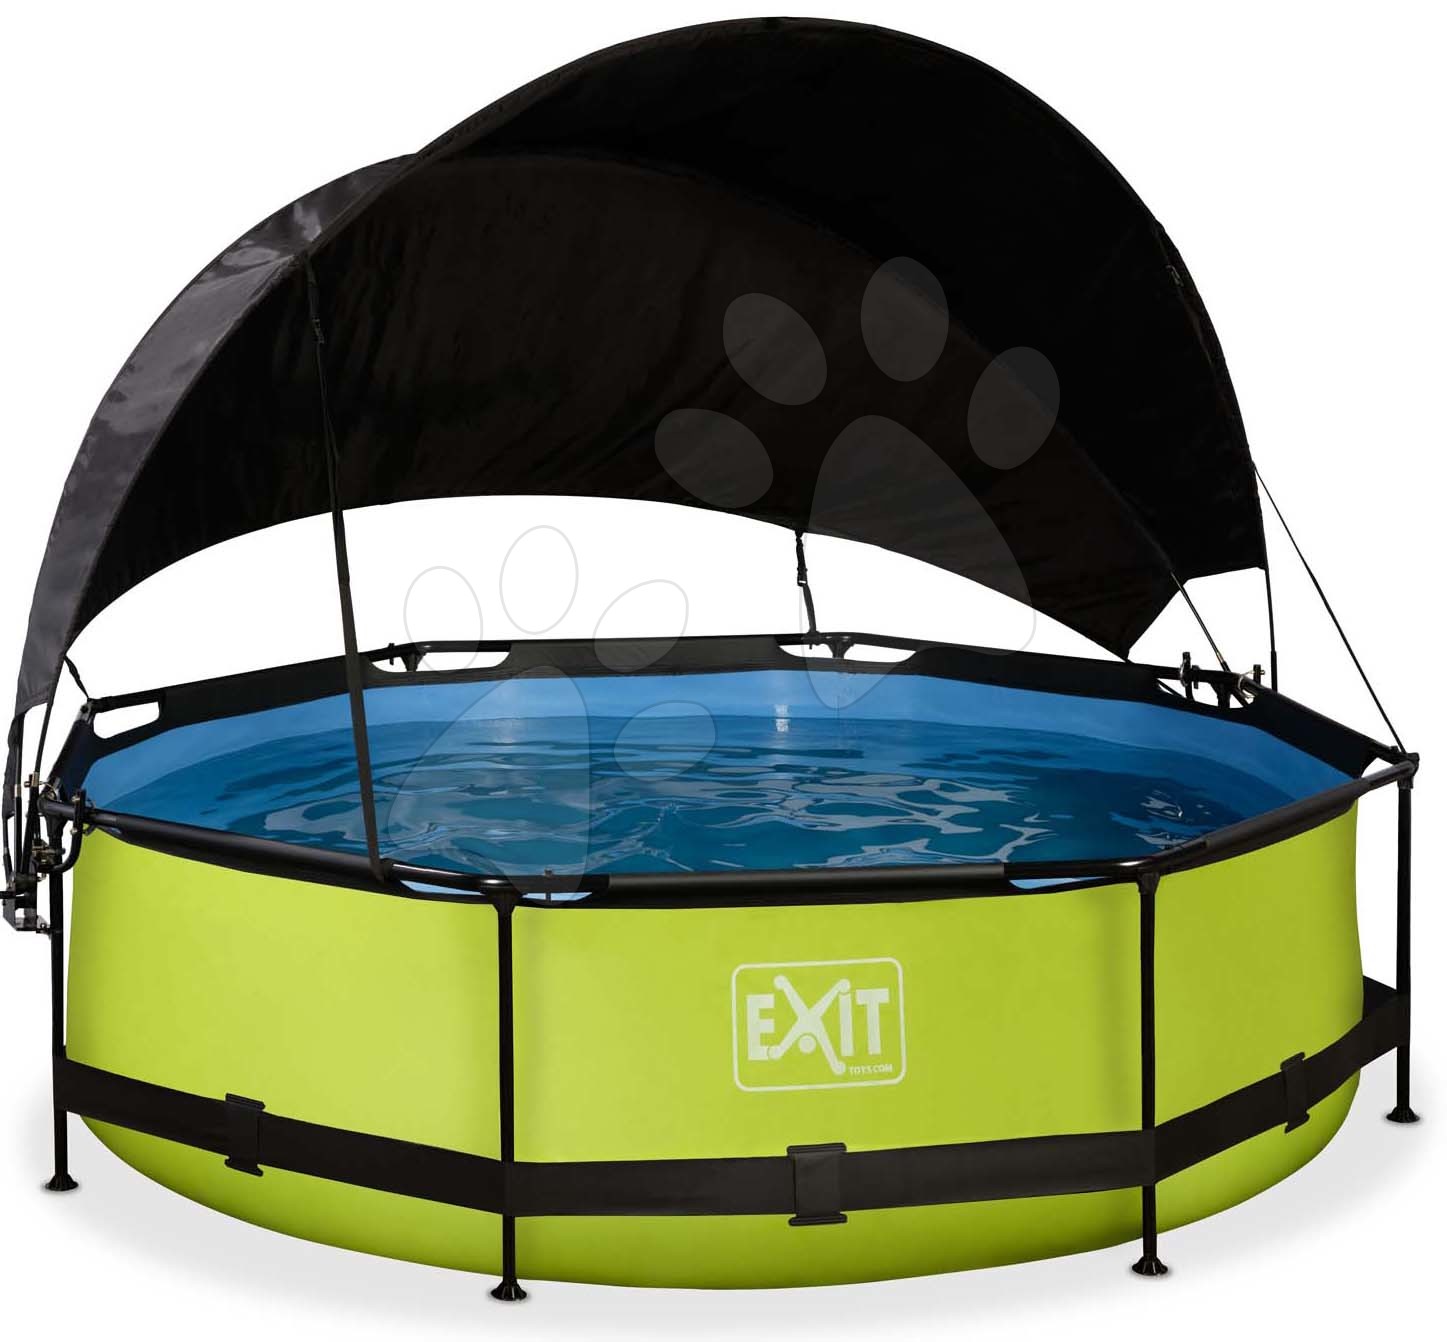 Bazén so strieškou a filtráciou Lime pool Exit Toys kruhový oceľová konštrukcia 300*76 cm zelený od 6 rokov